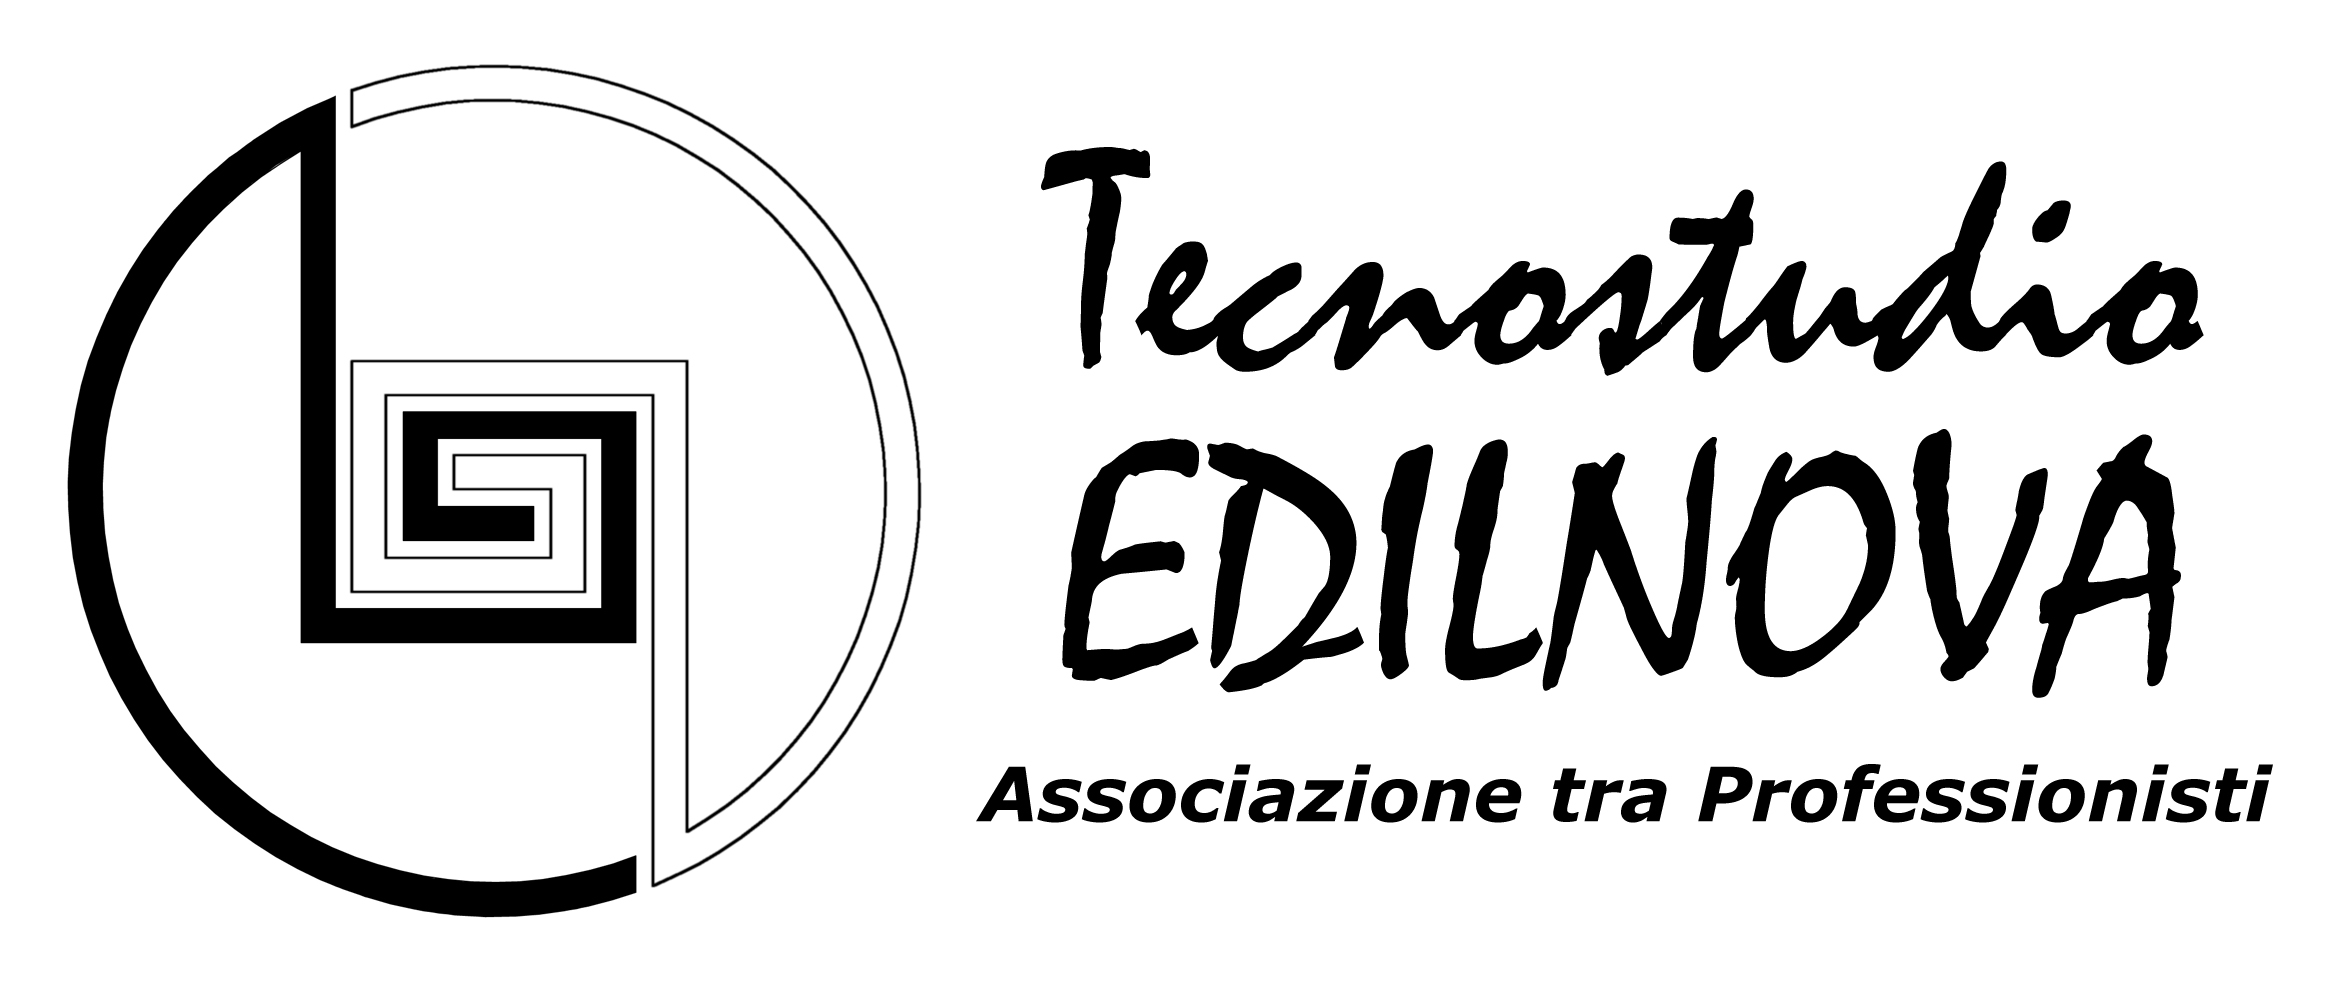 Logo Edilnova